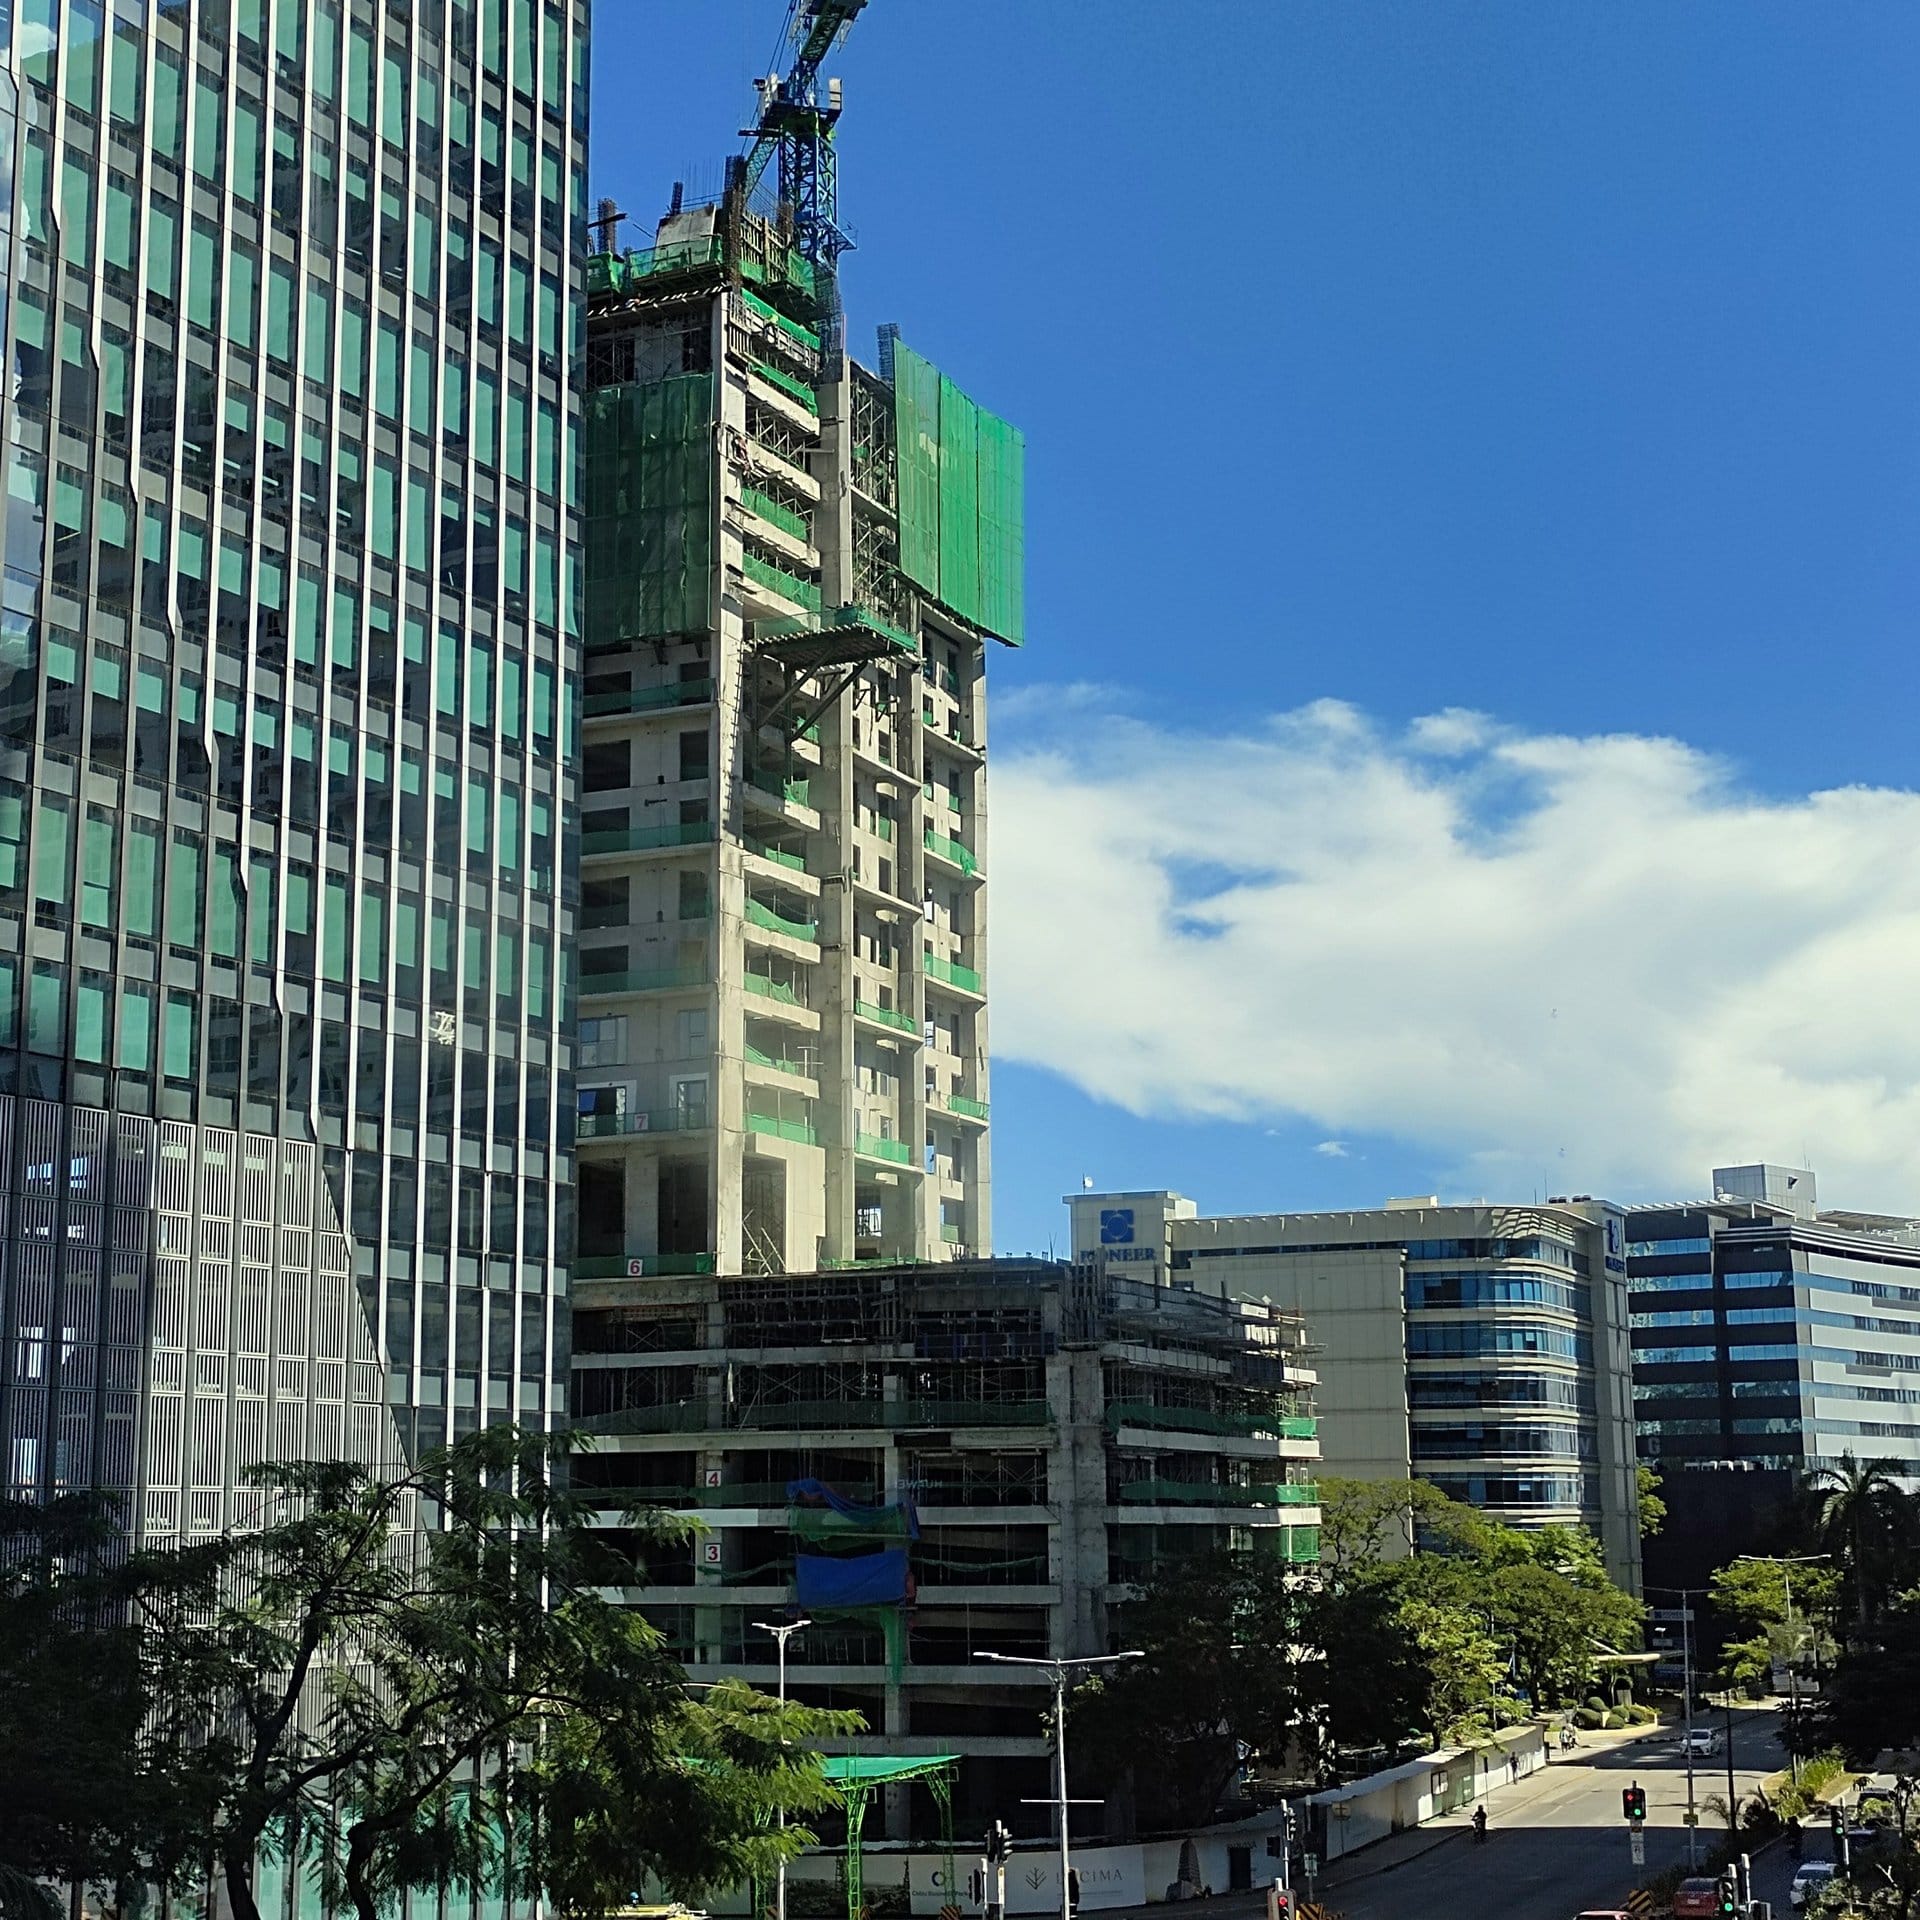 lucima residences, condominium for sale in cebu business park